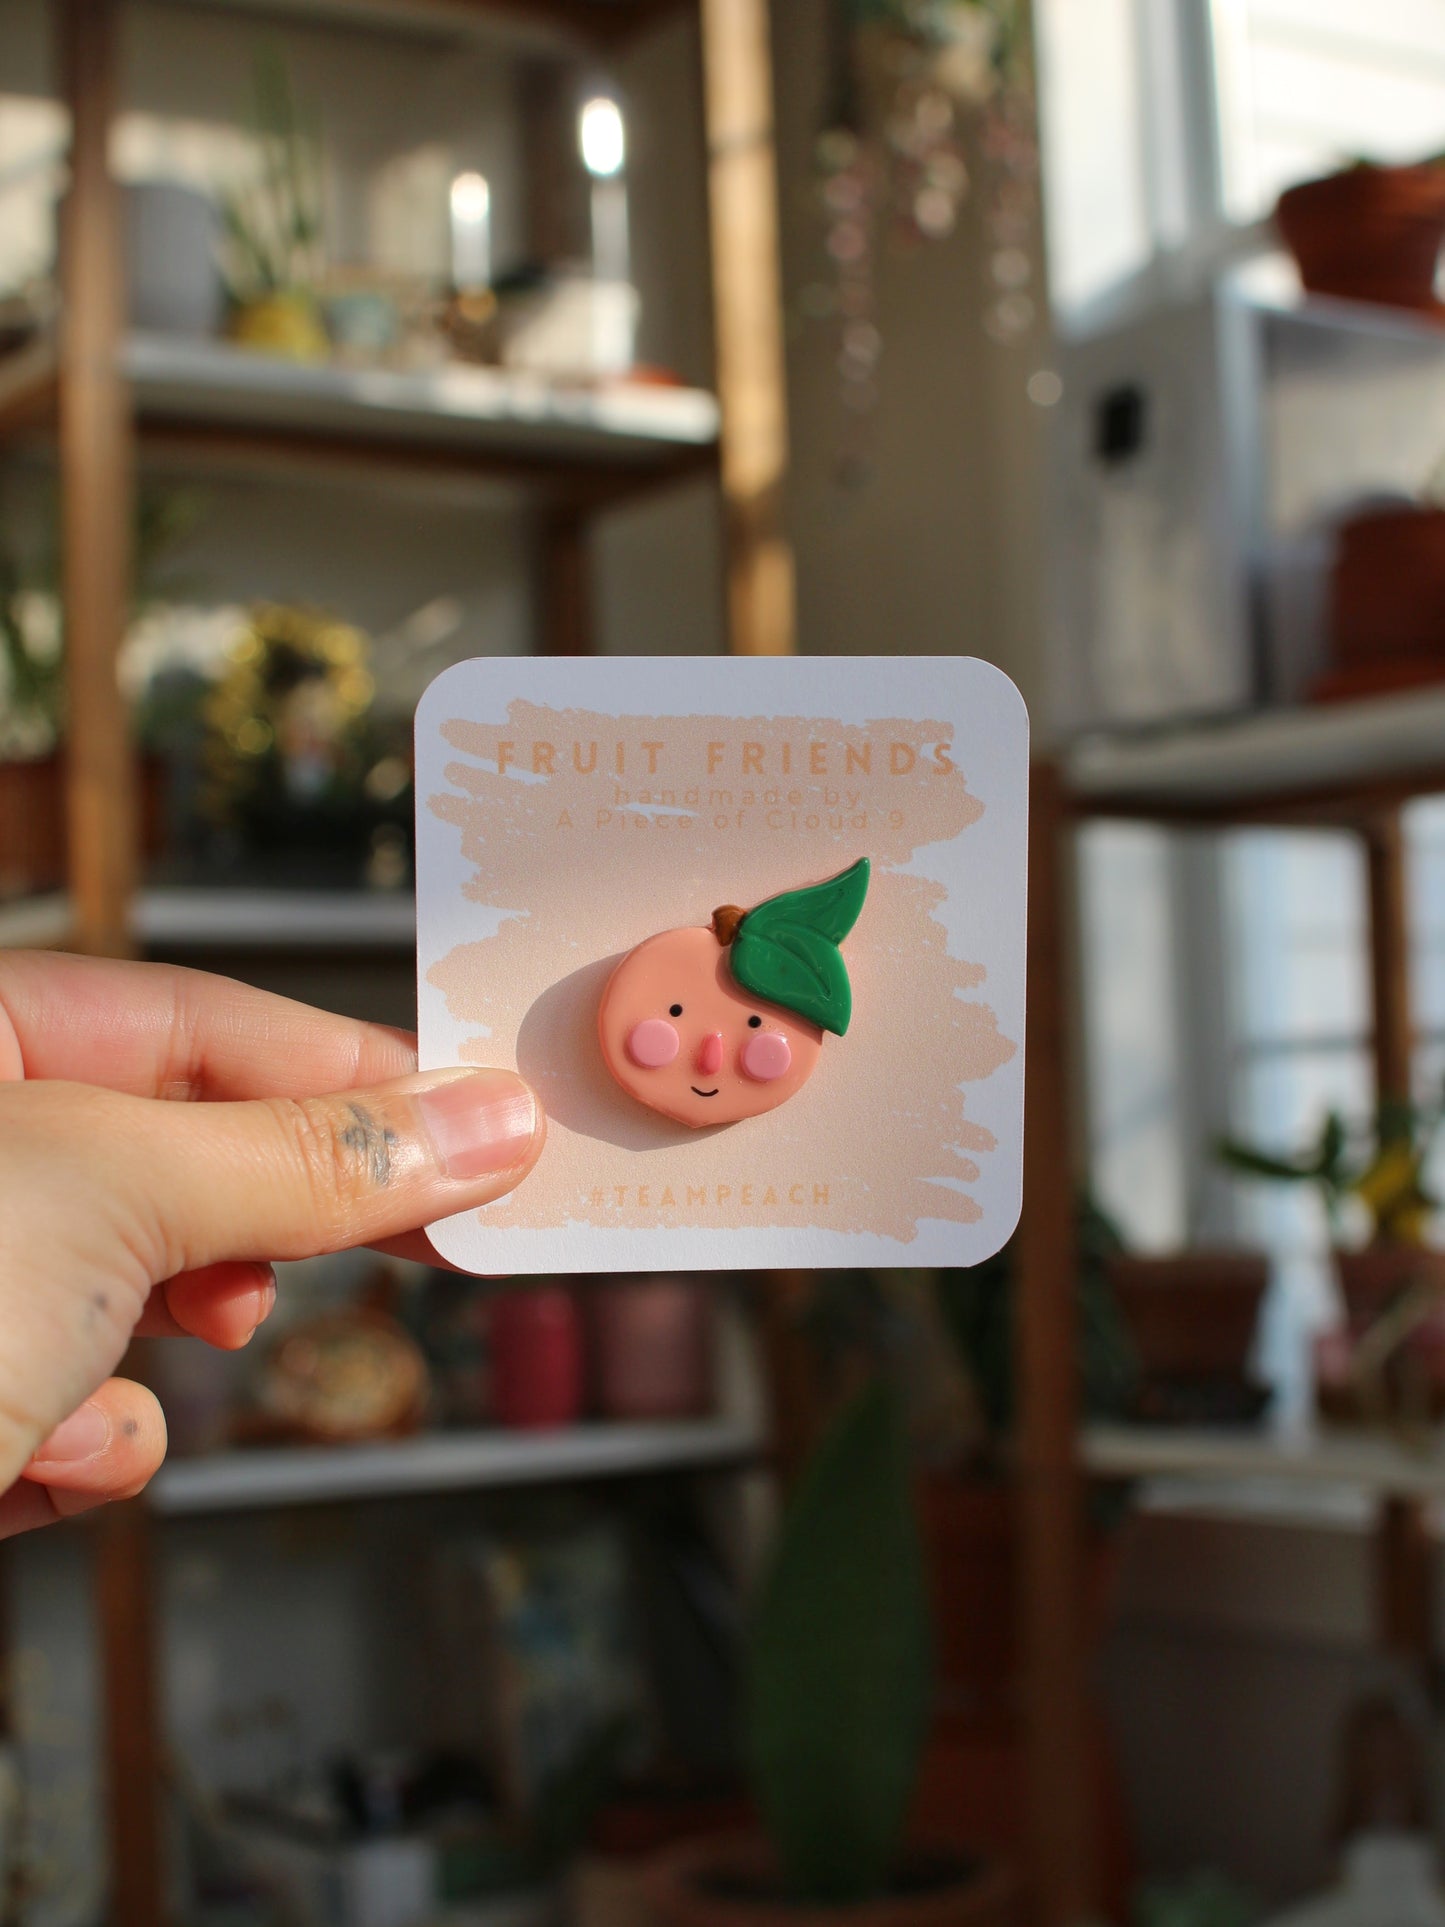 Fruit Friends - Handmade Polymer Clay Pins